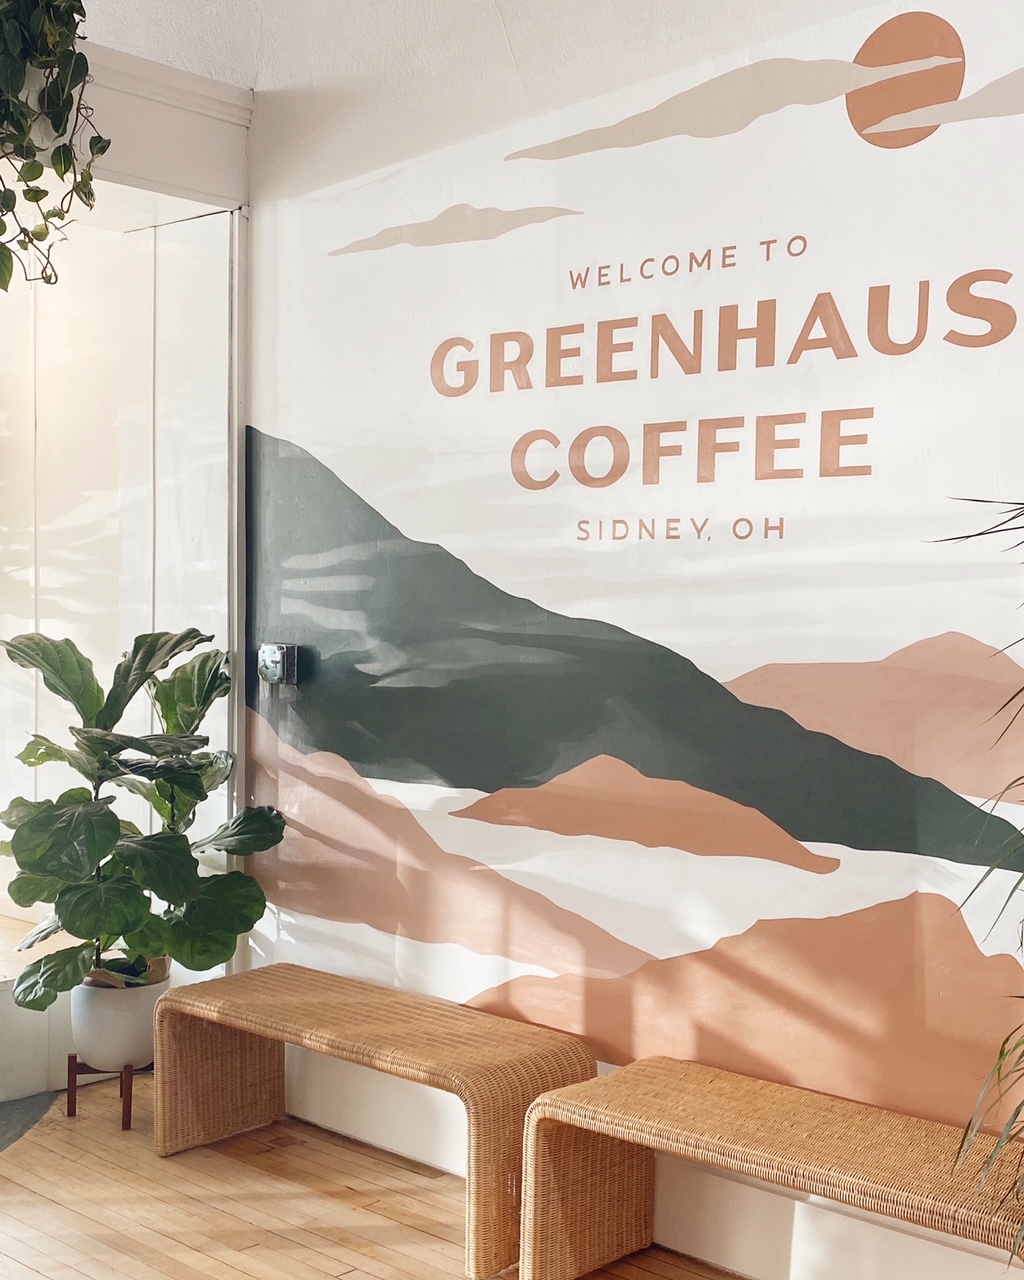 Greenhaus Coffee Sidney Ohio 5